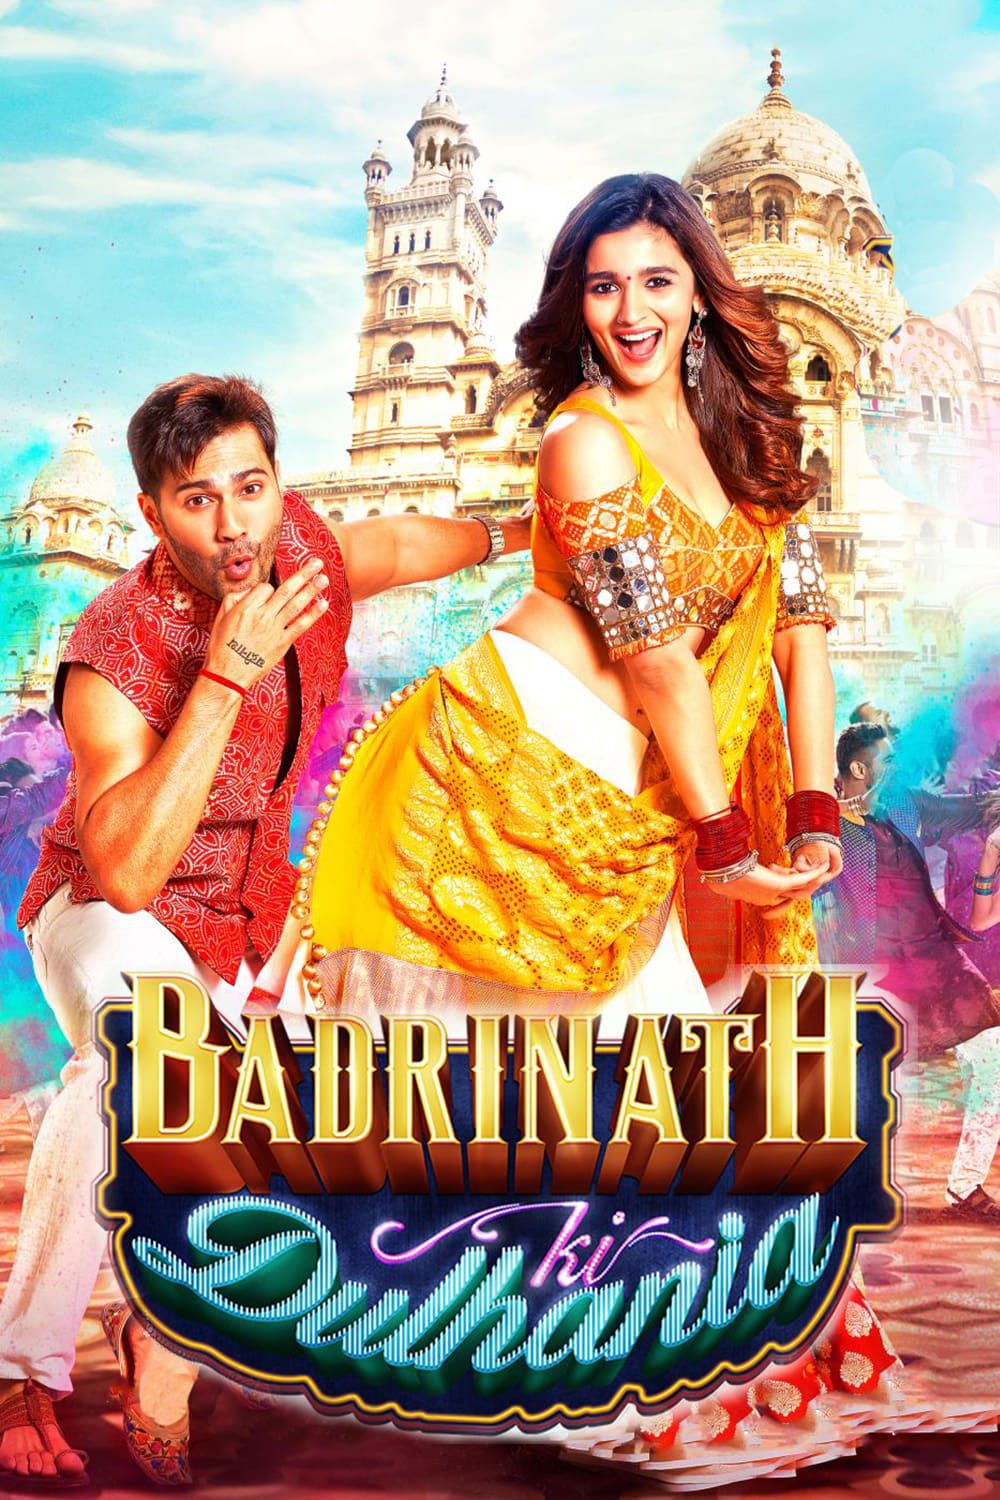 Poster for the movie "Badrinath Ki Dulhania"